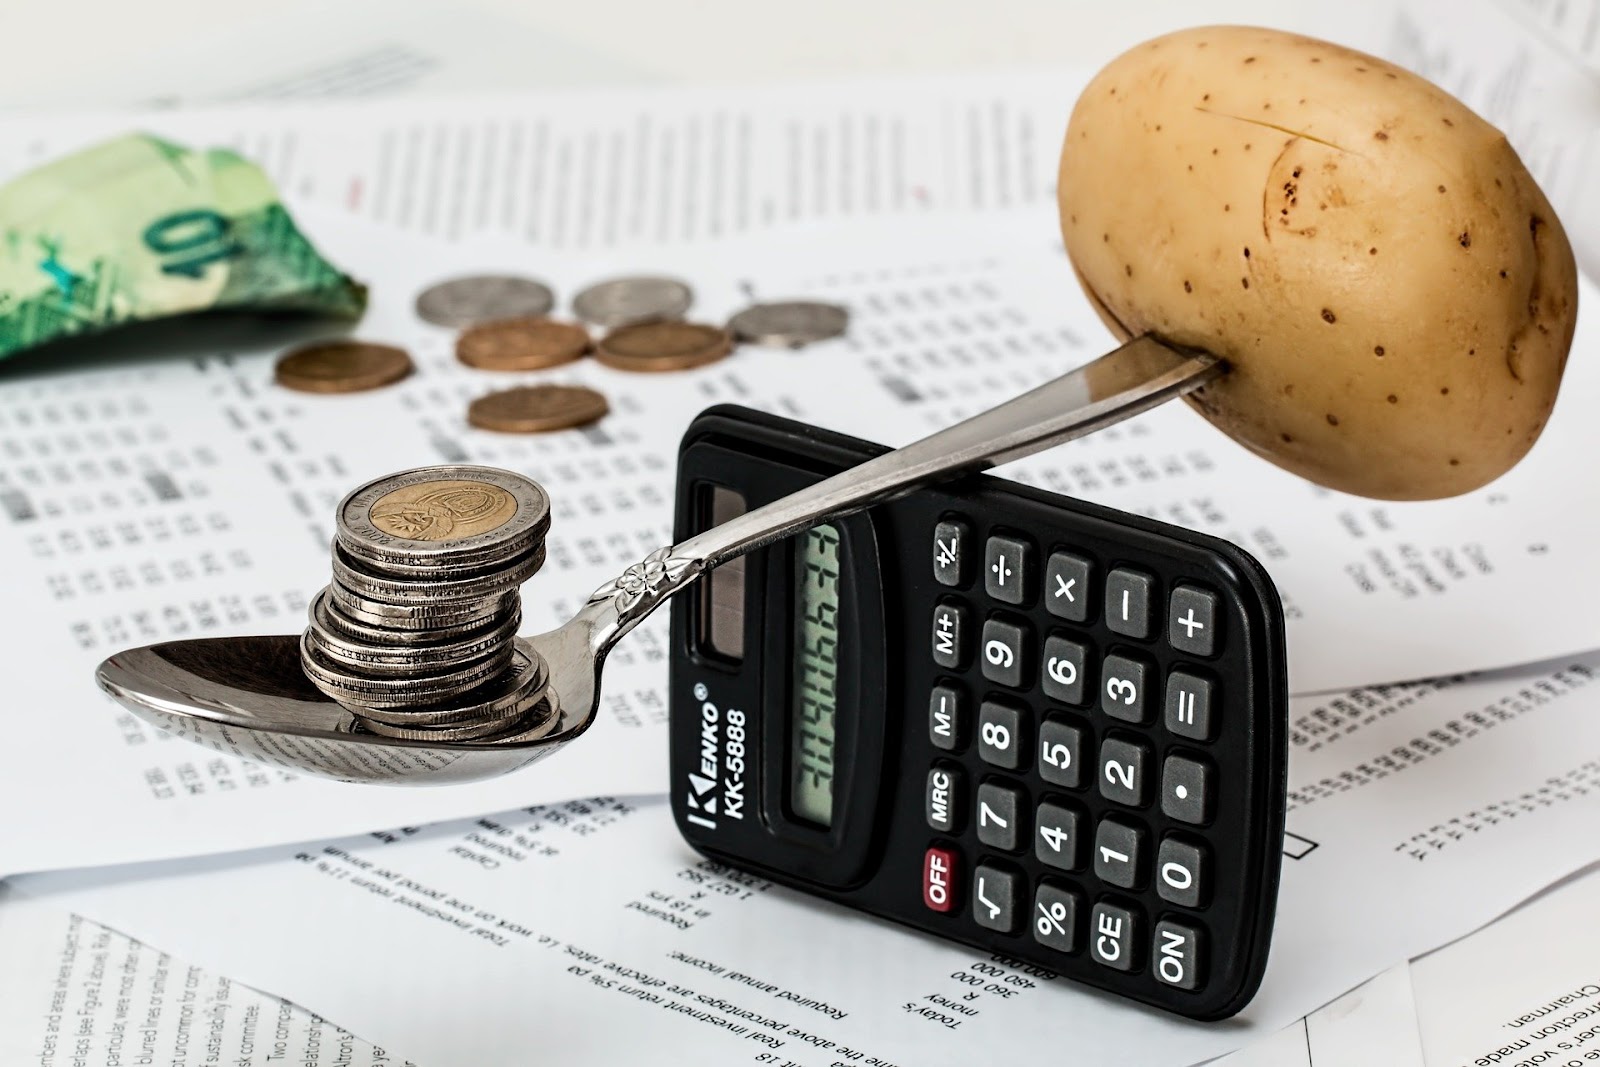 Calcular o custo dos funcionários é essencial à saúde financeira da sua empresa. Na imagem aparece uma calculadora com uma colher e uma batat, que representa o equilíbrio financeiro.